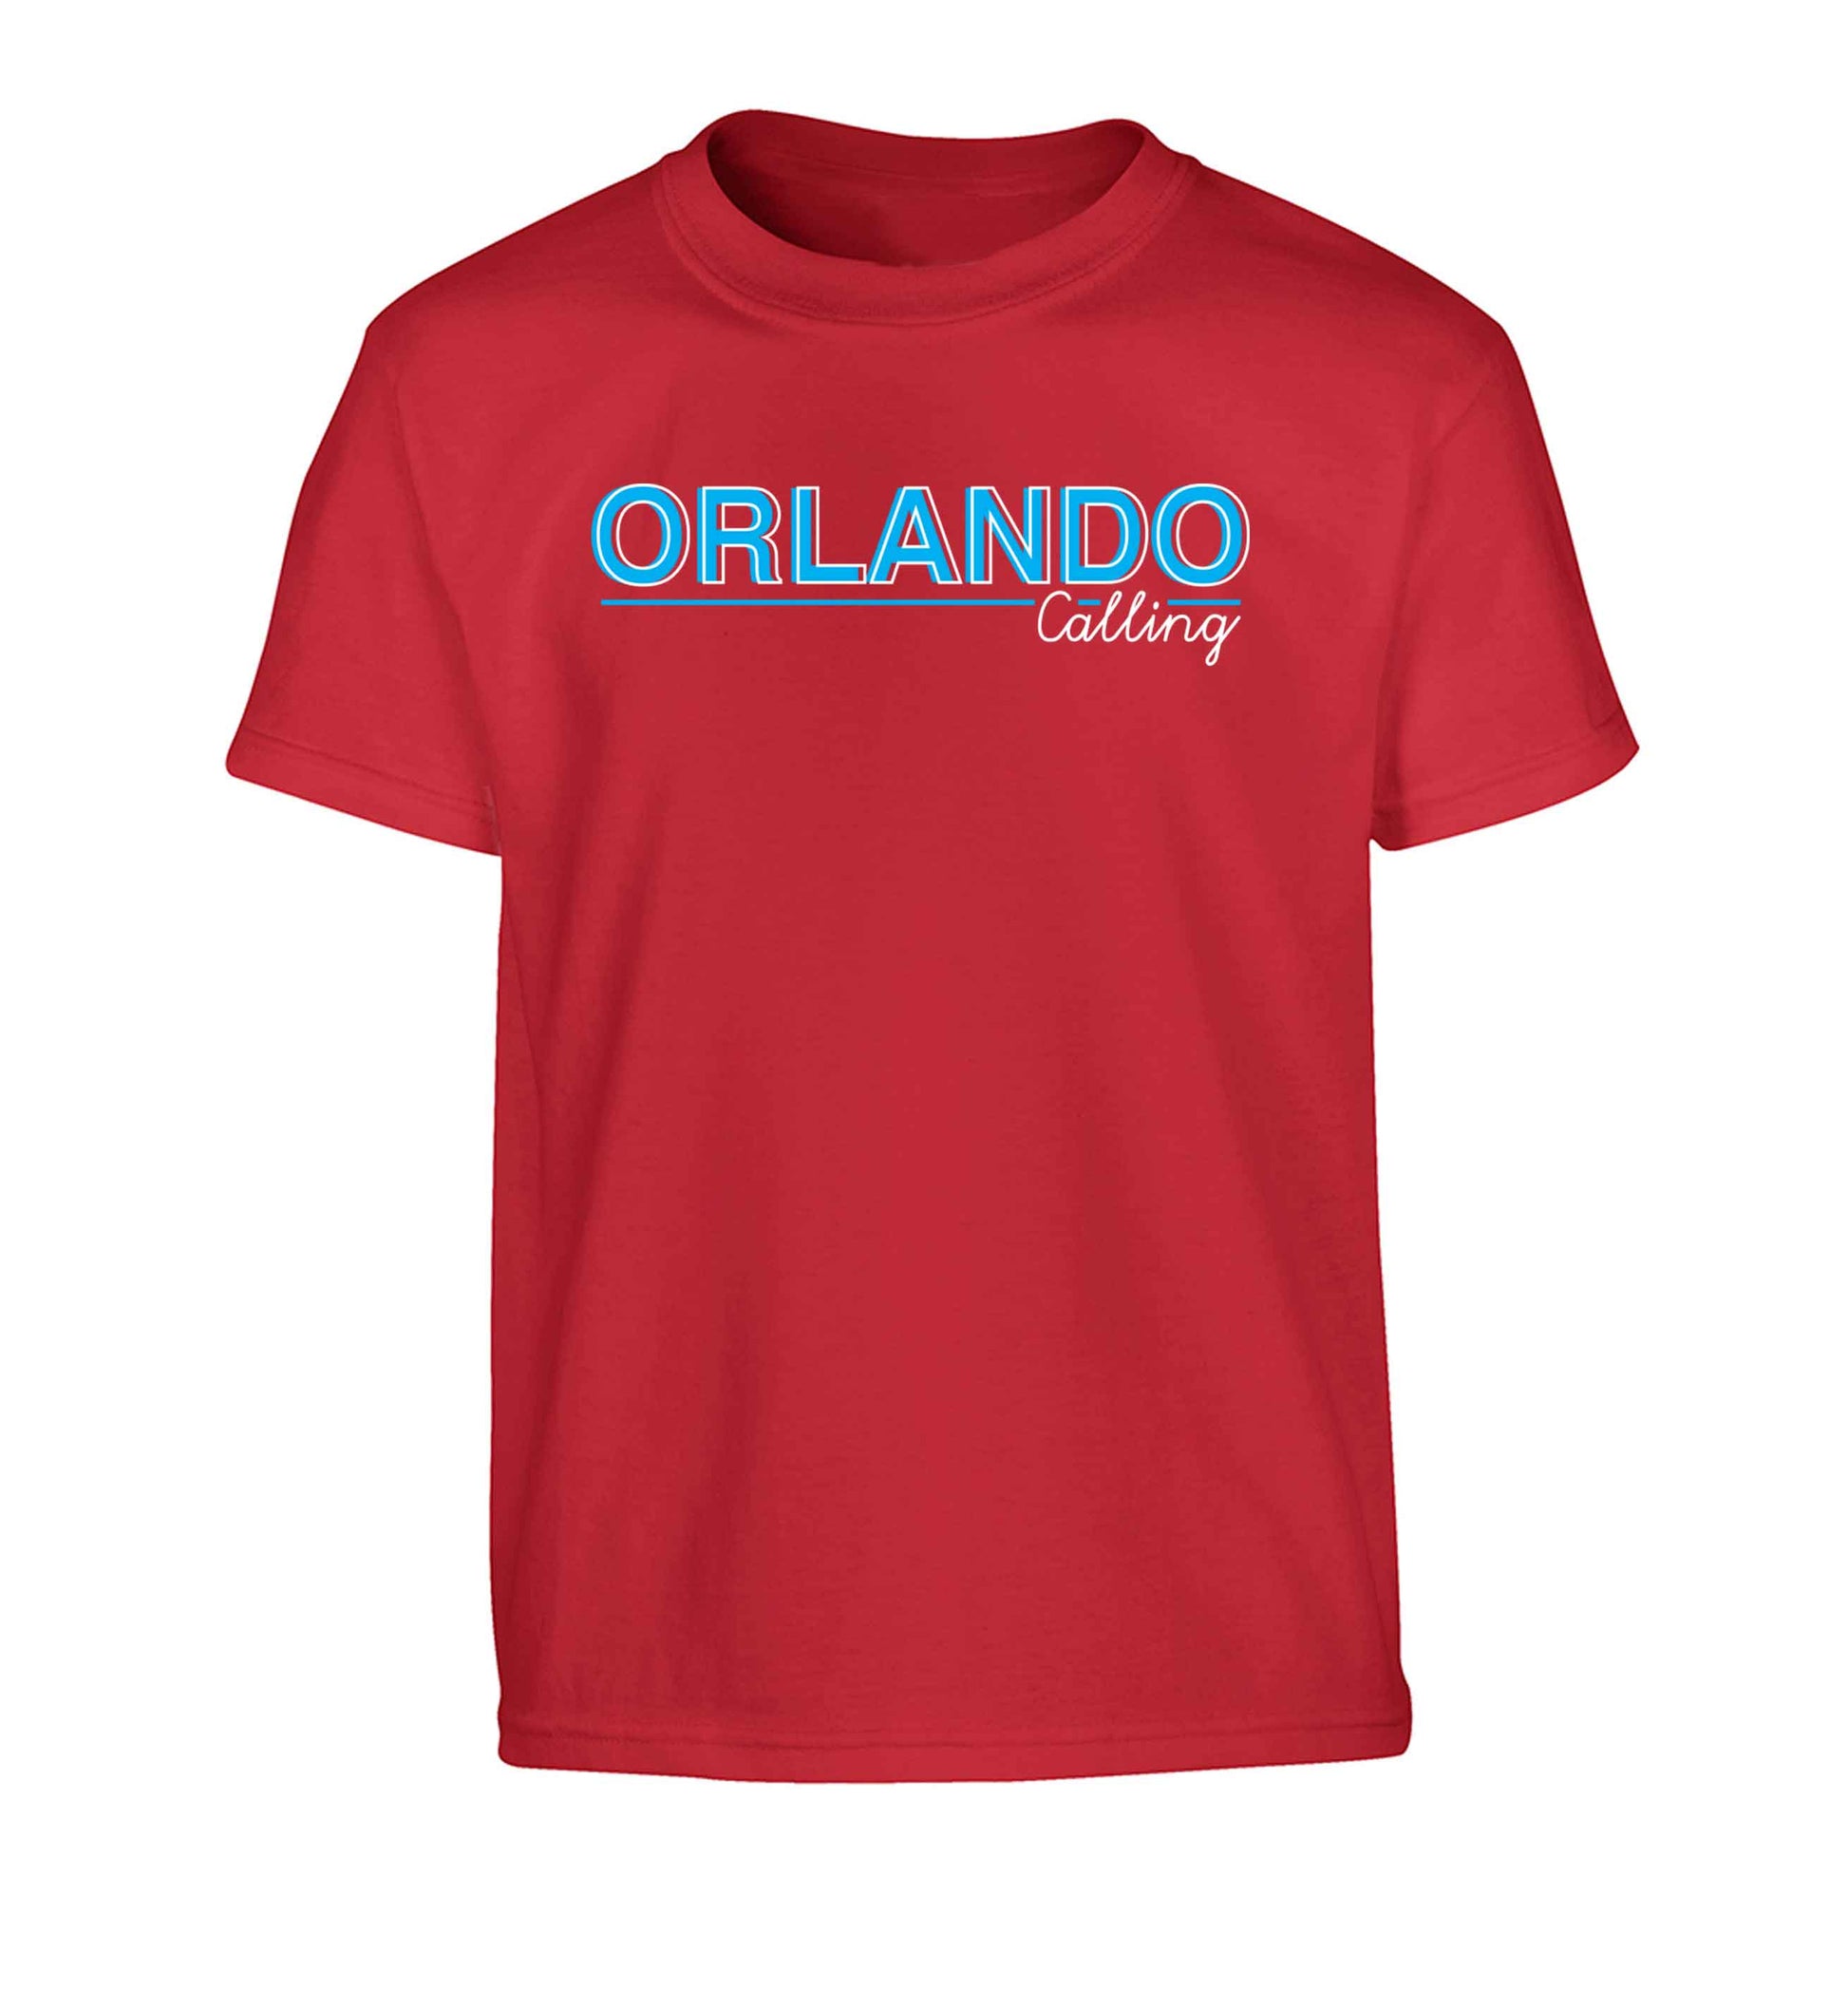 Orlando calling Children's red Tshirt 12-13 Years